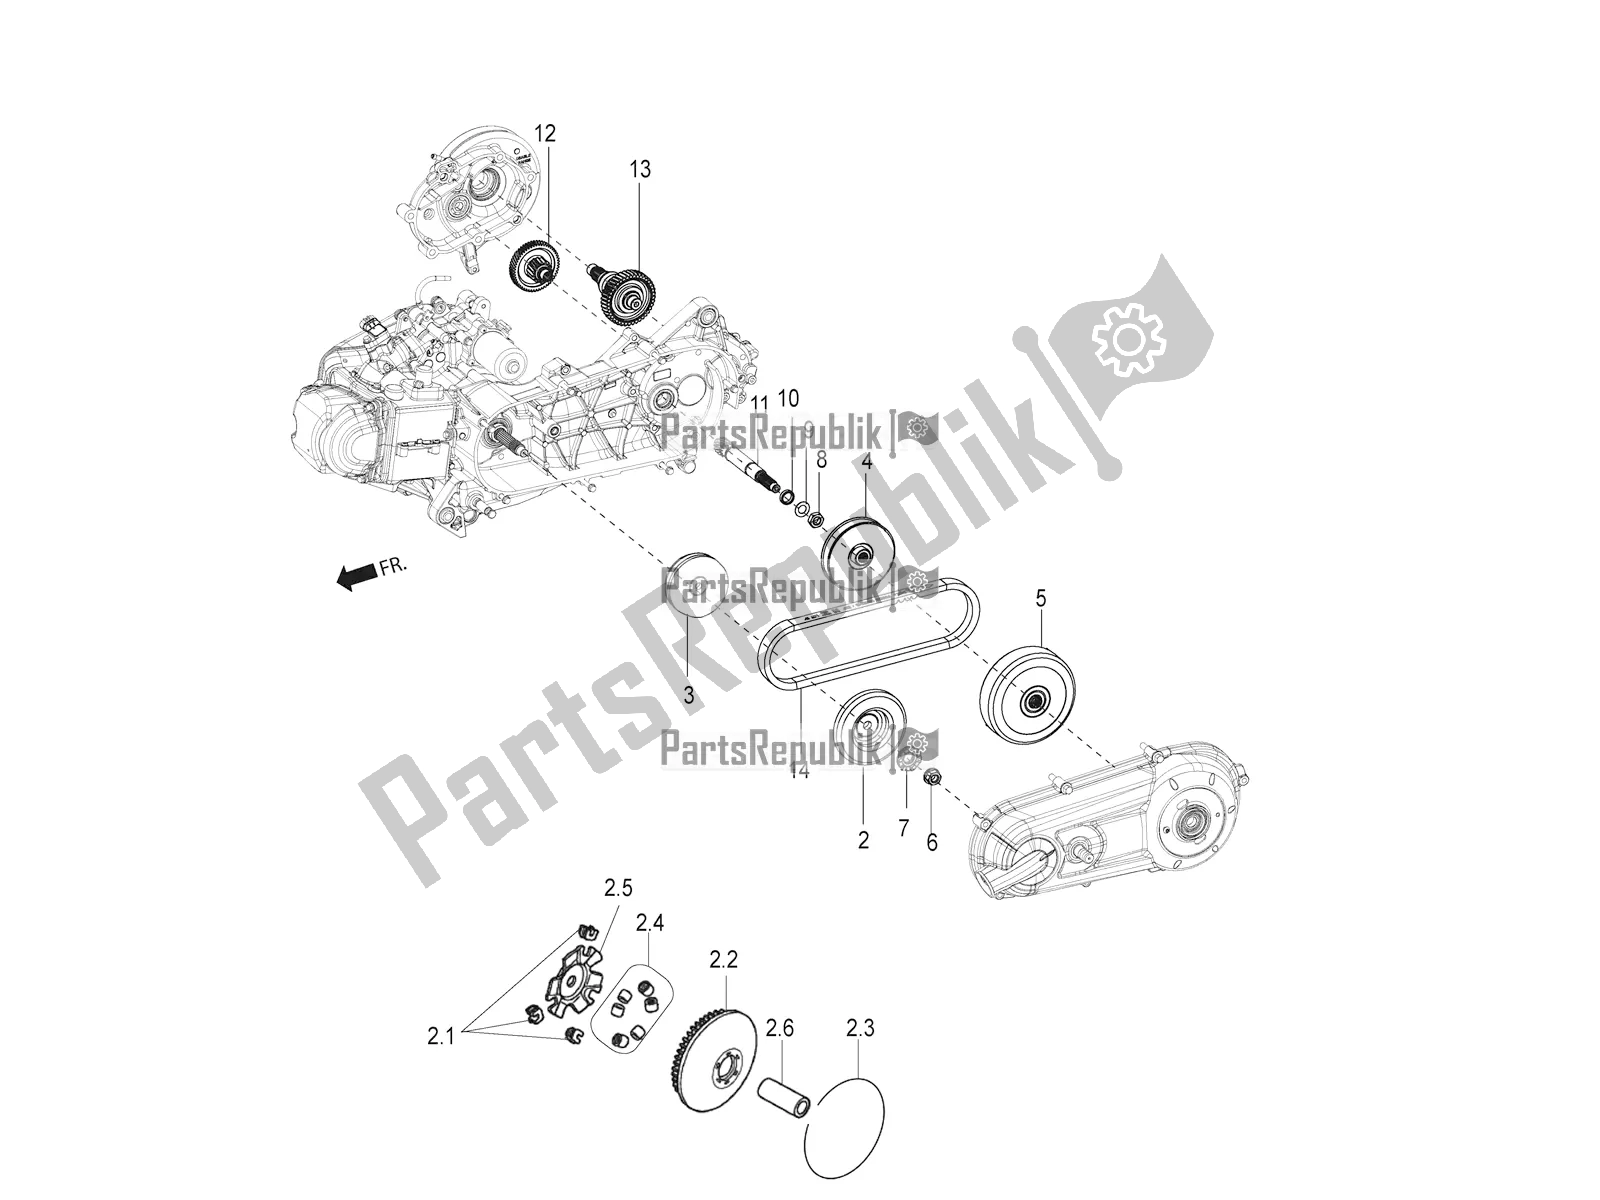 Alle onderdelen voor de Transmissie-koppeling van de Aprilia SR Motard 150 ABS Racer Carb. Latam 2019